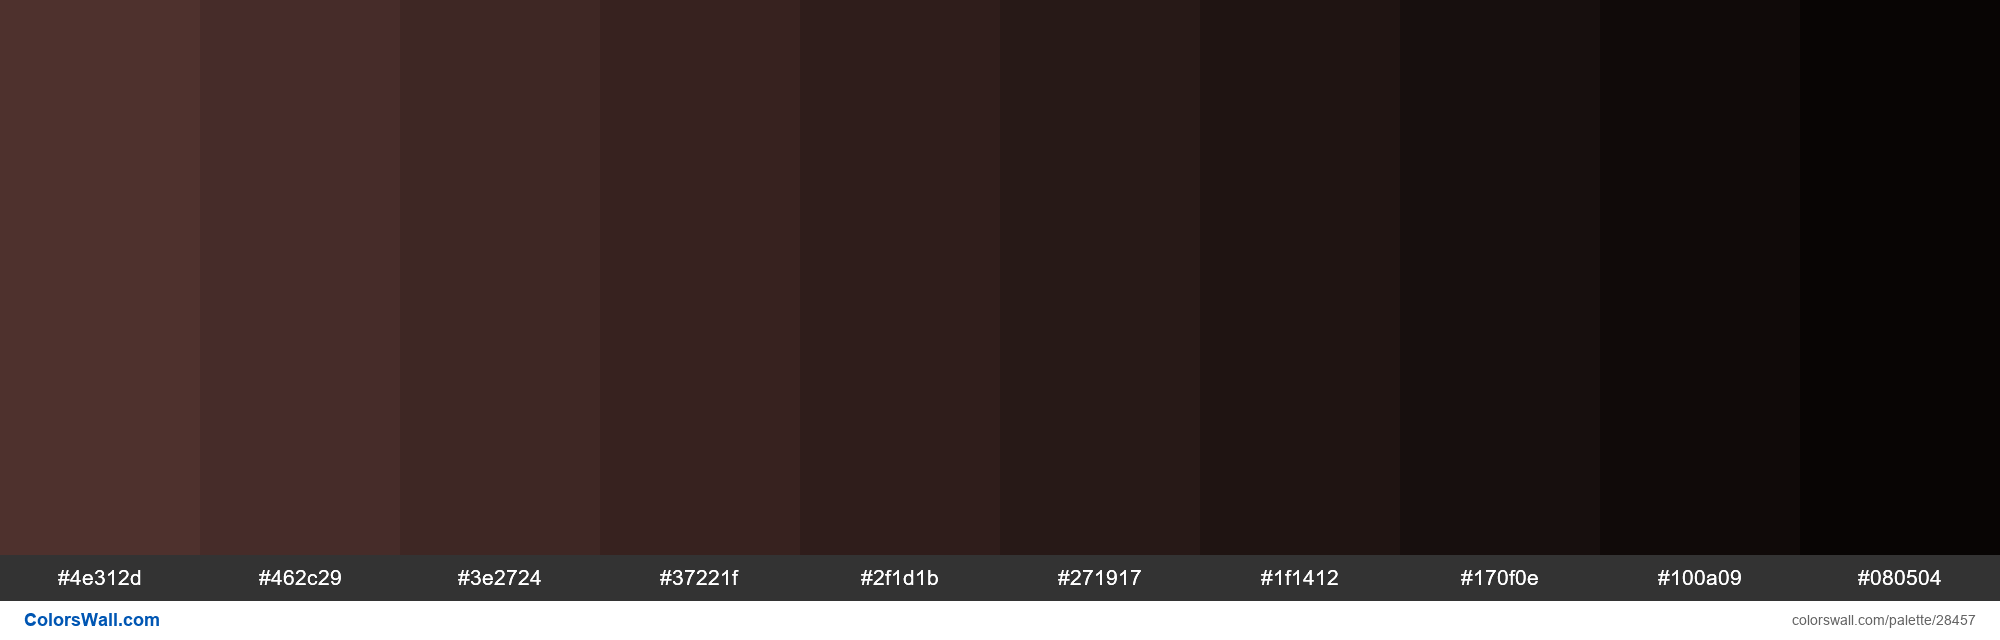 colorswall on X: Shades of Espresso color #4E312D hex #4e312d